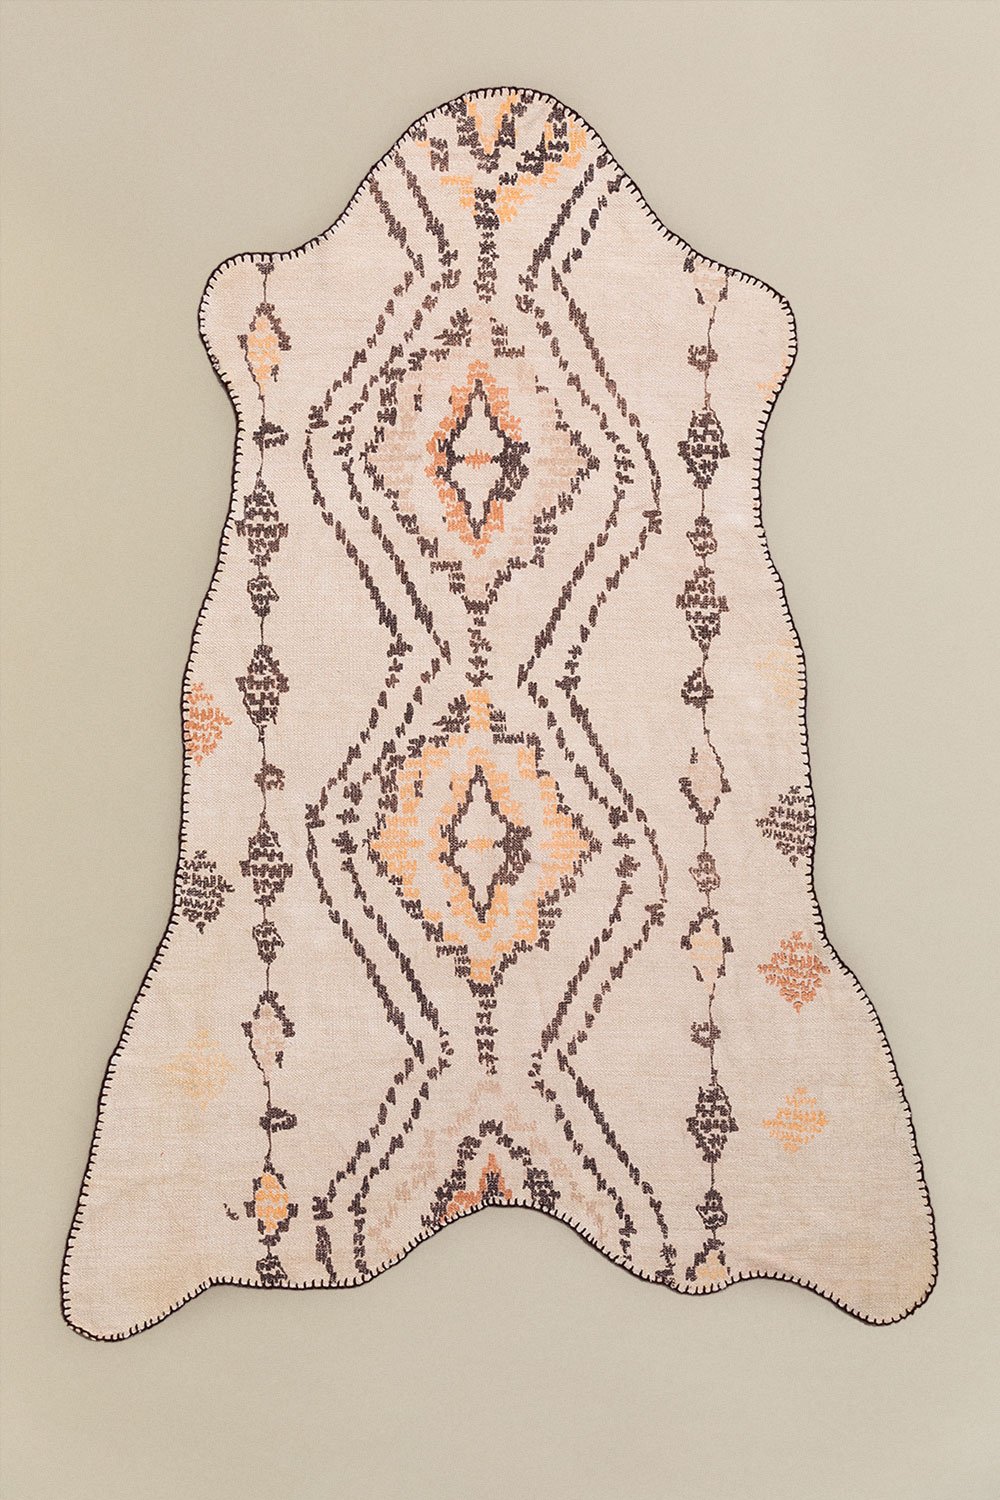 Katoenen chenille vloerkleed (202x148 cm) Zarec, galerij beeld 1